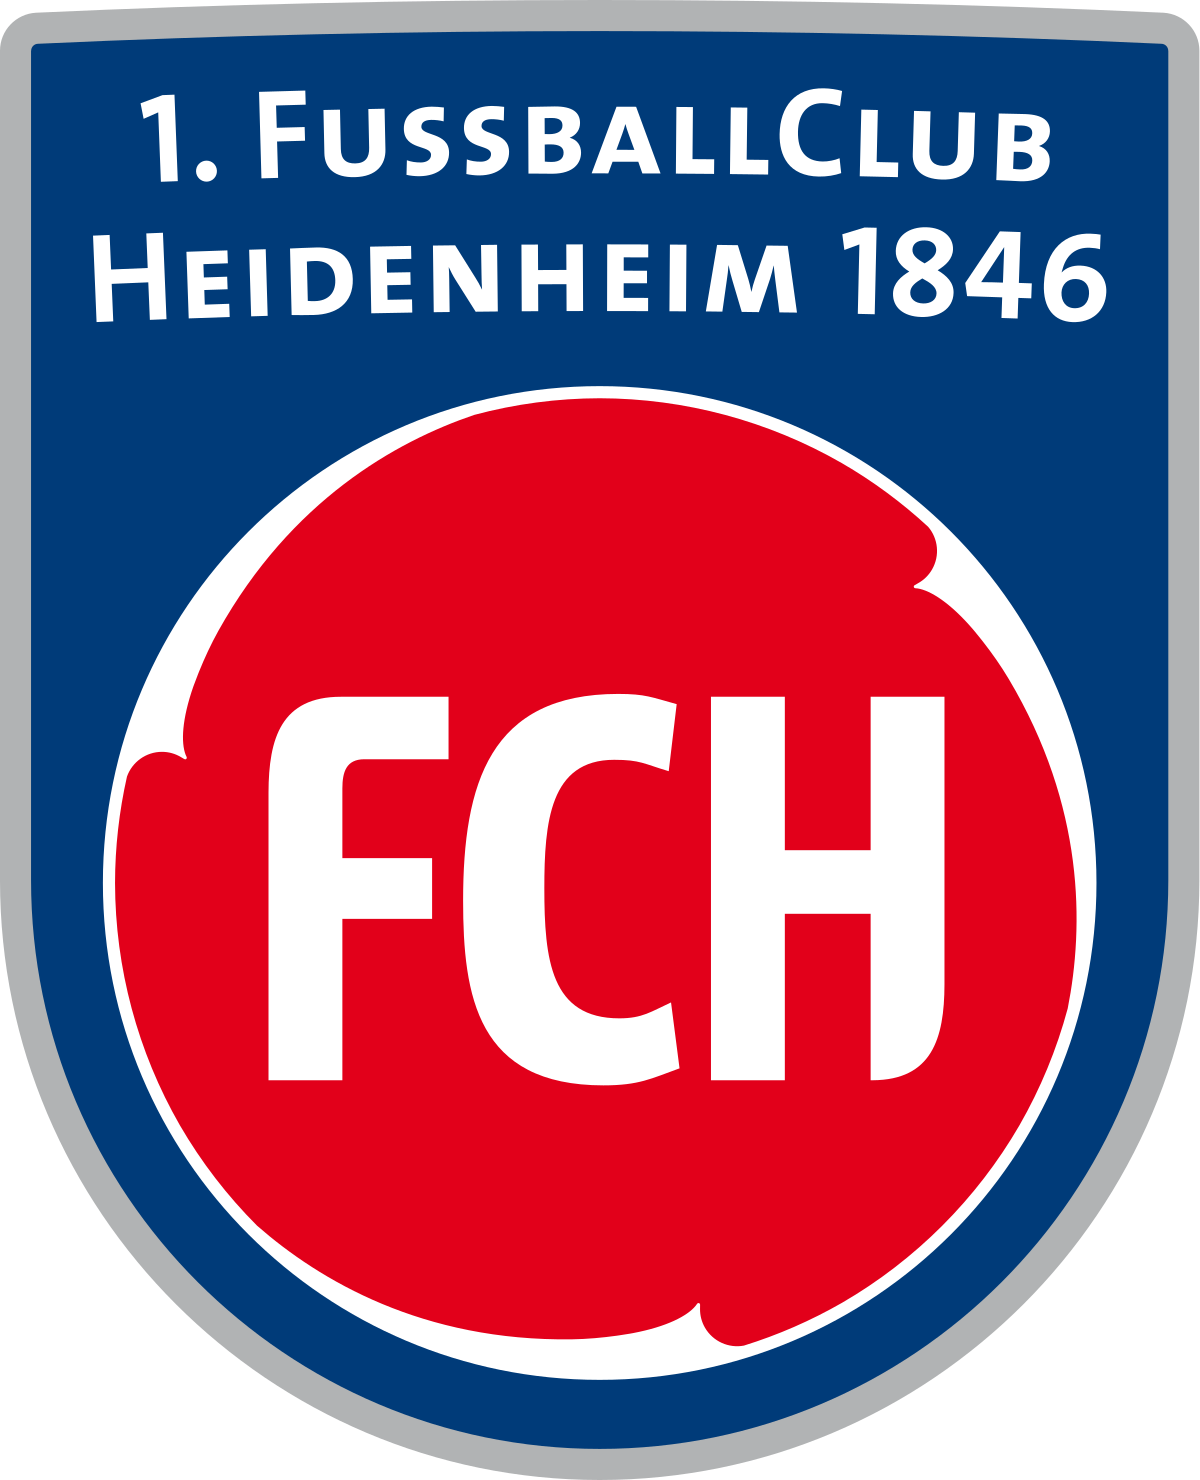 CLUB HEIDENHEIM